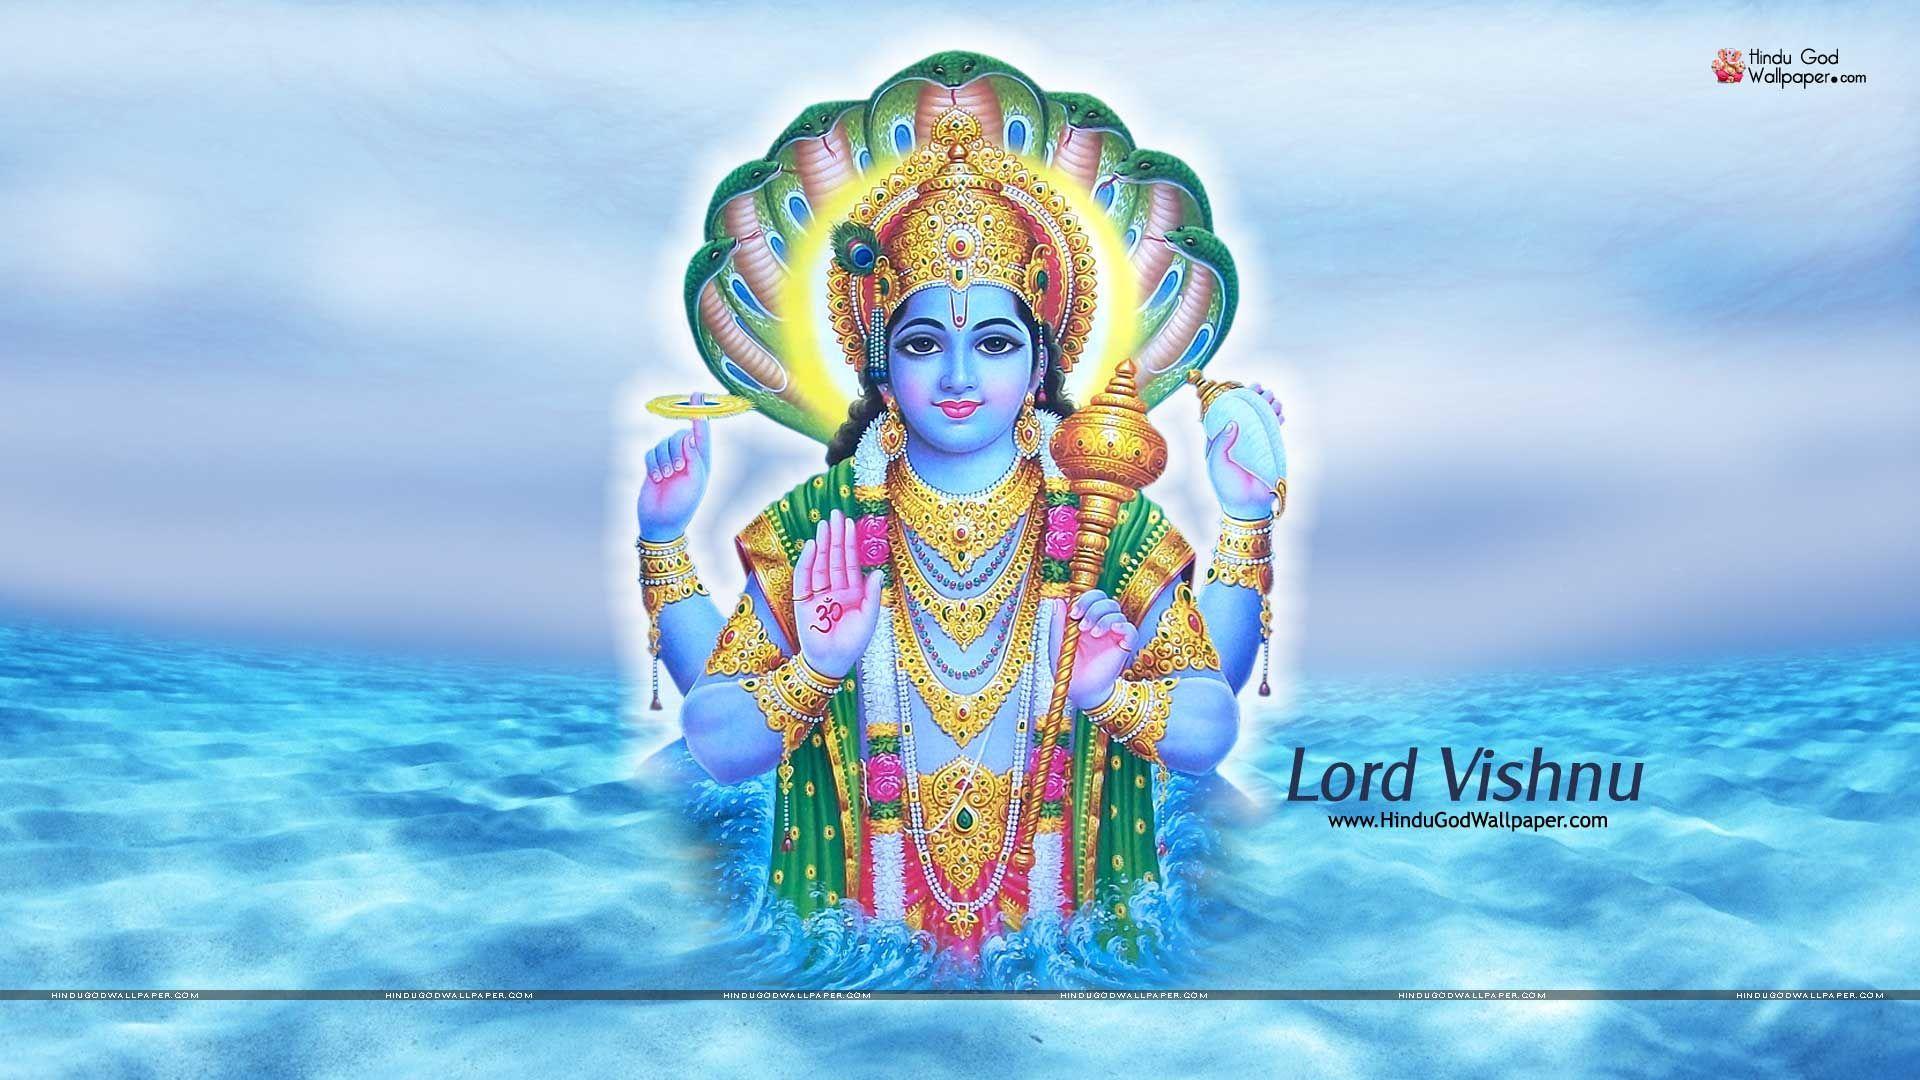 lord vishnu wallpaper full size. Lord Vishnu Wallpaper